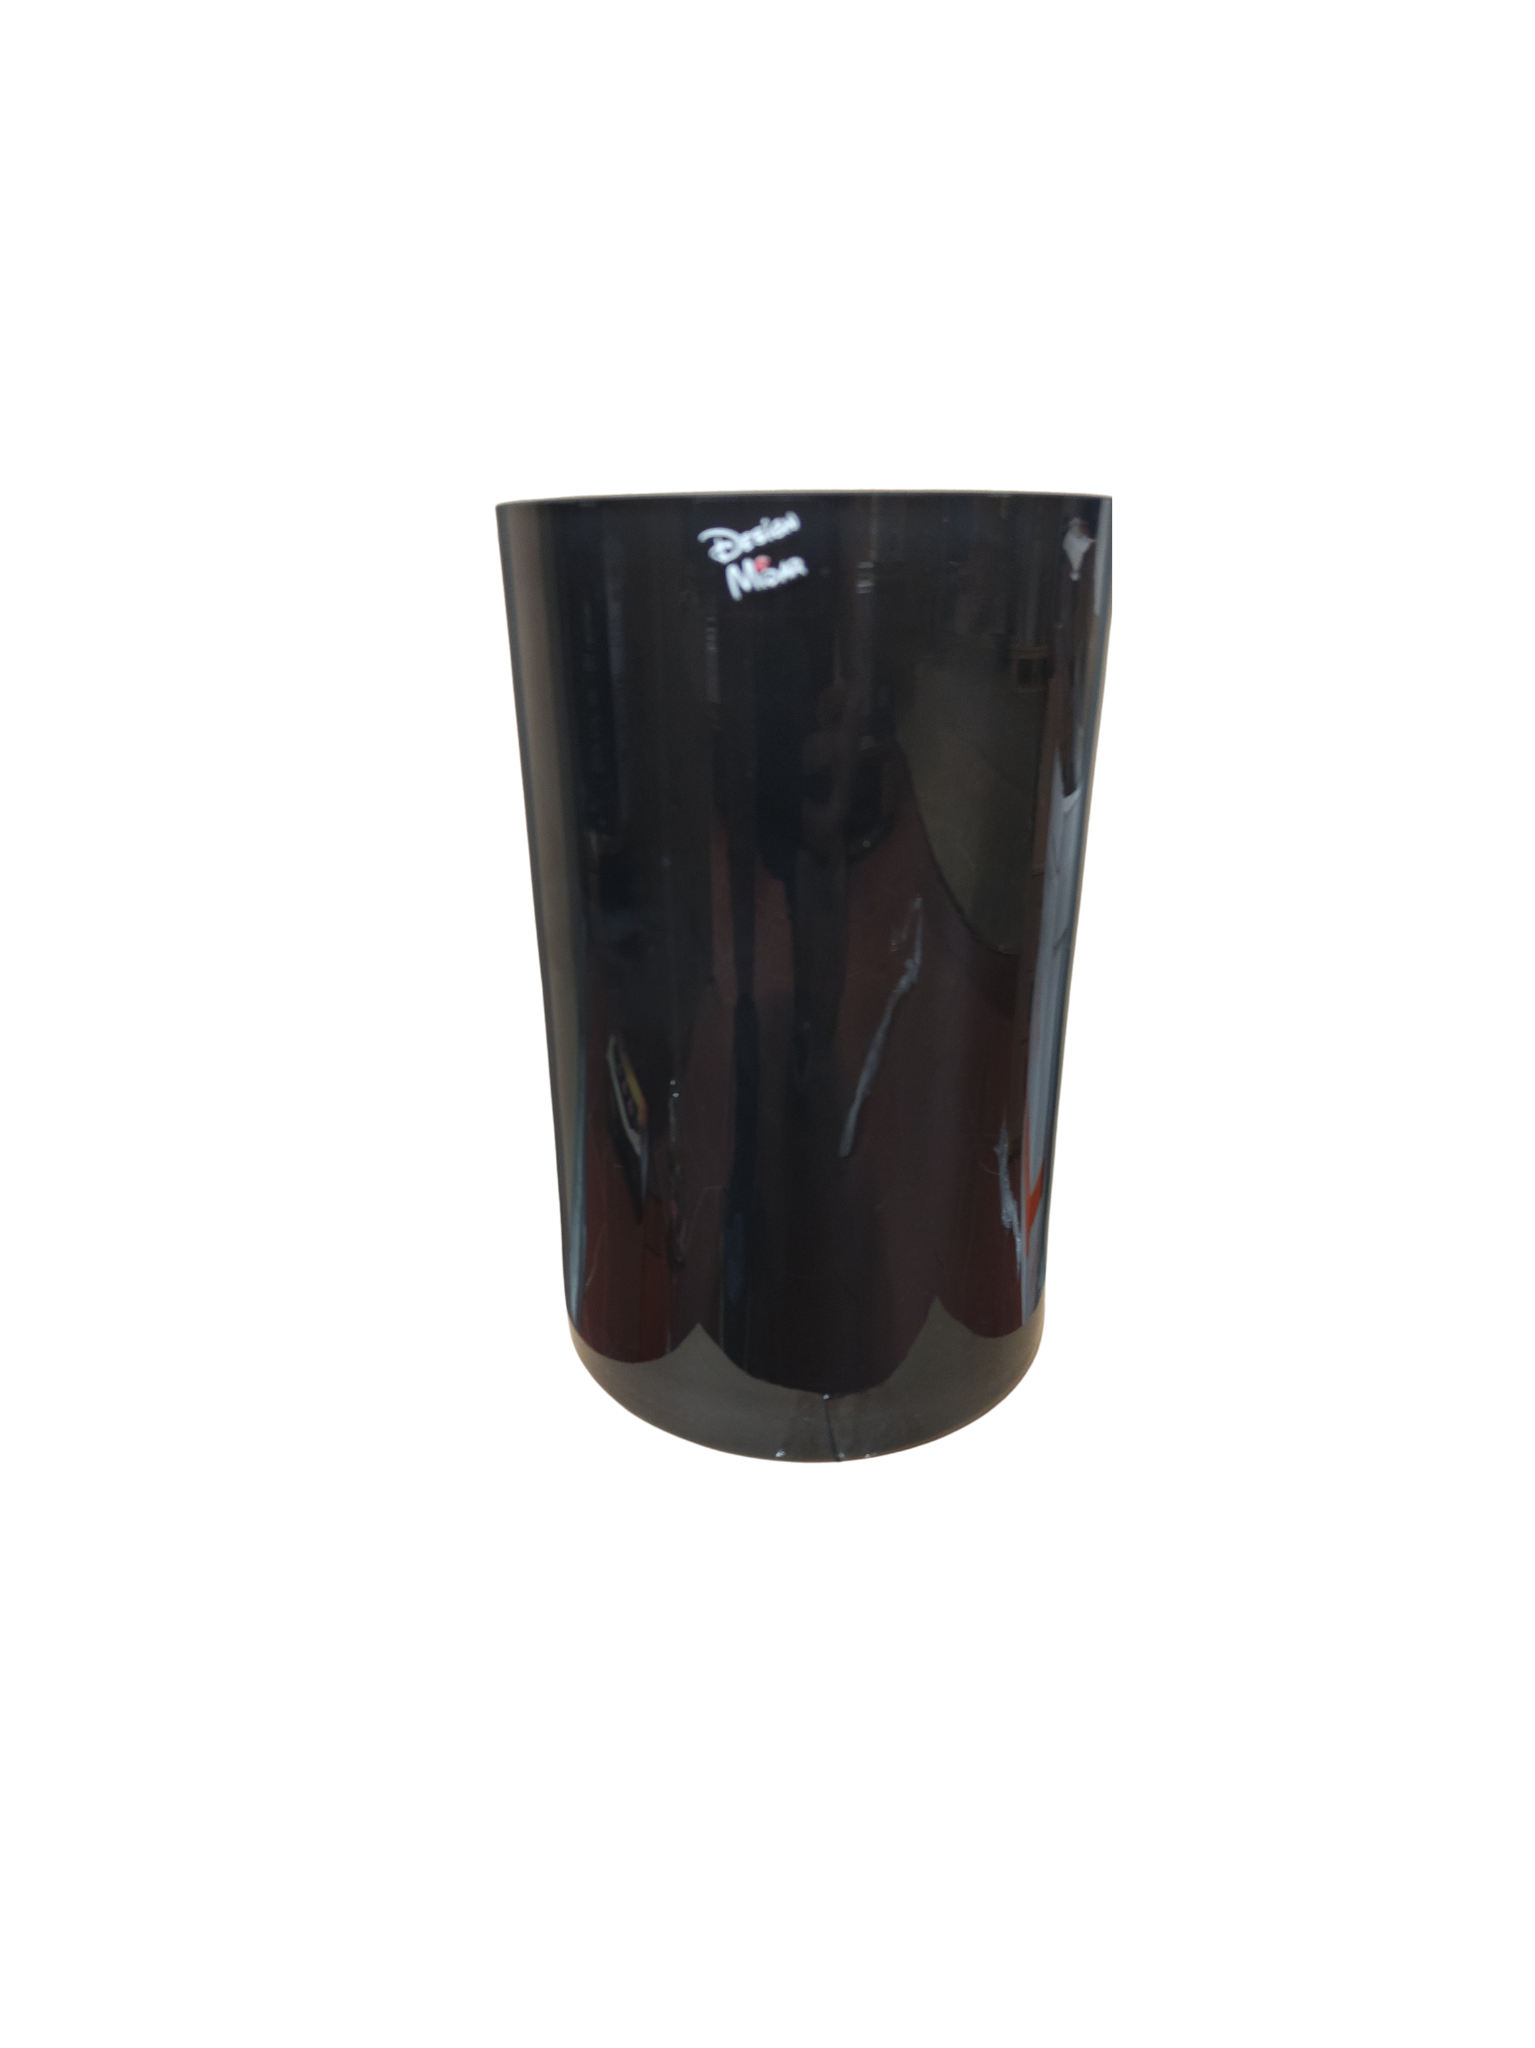 skleněná váza midar číslo 26-23 cm